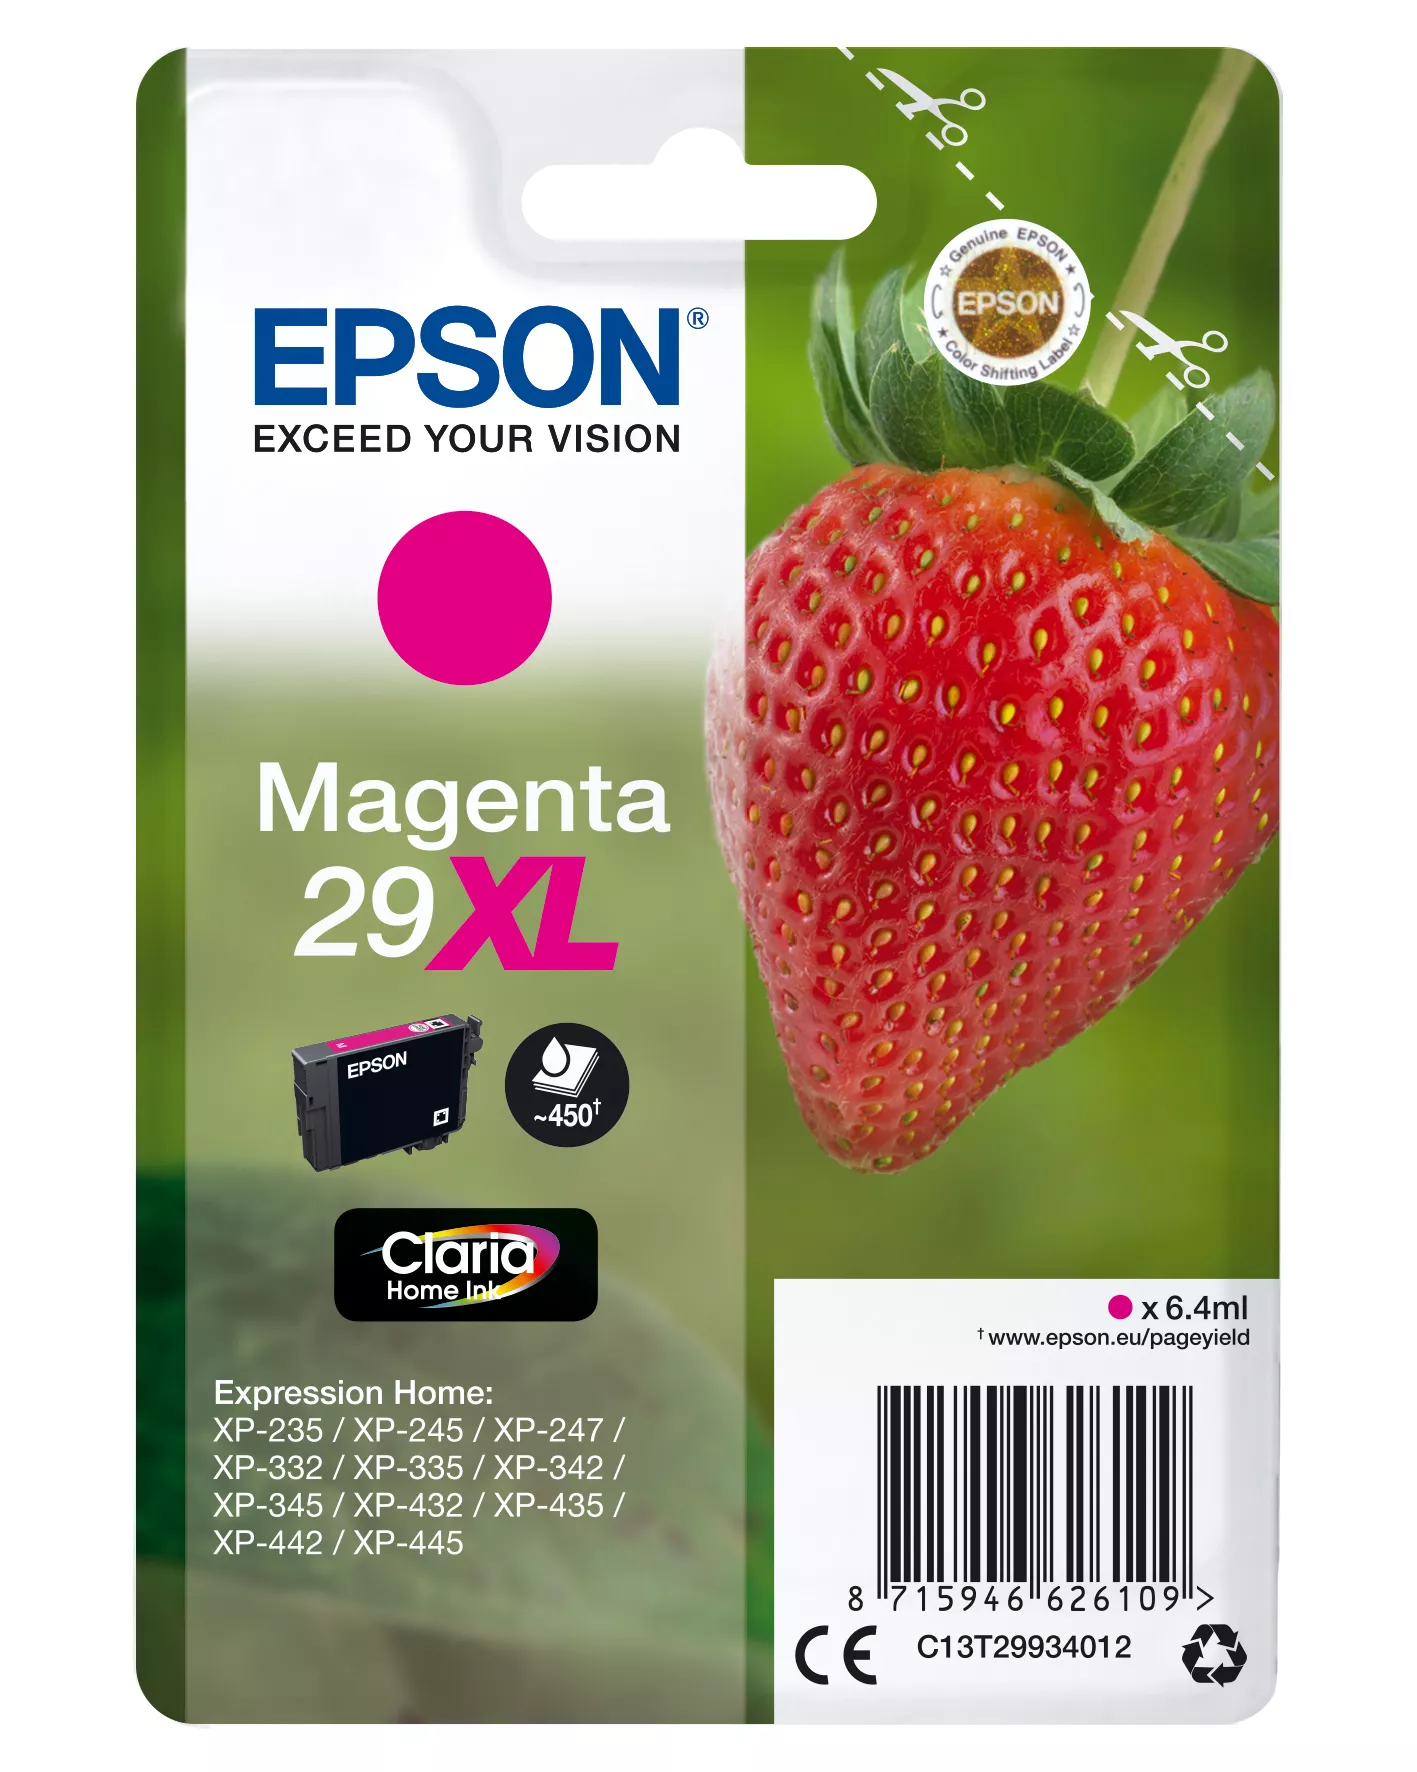 Achat EPSON Cartouche Fraise Encre Claria Home Magenta XL et autres produits de la marque Epson